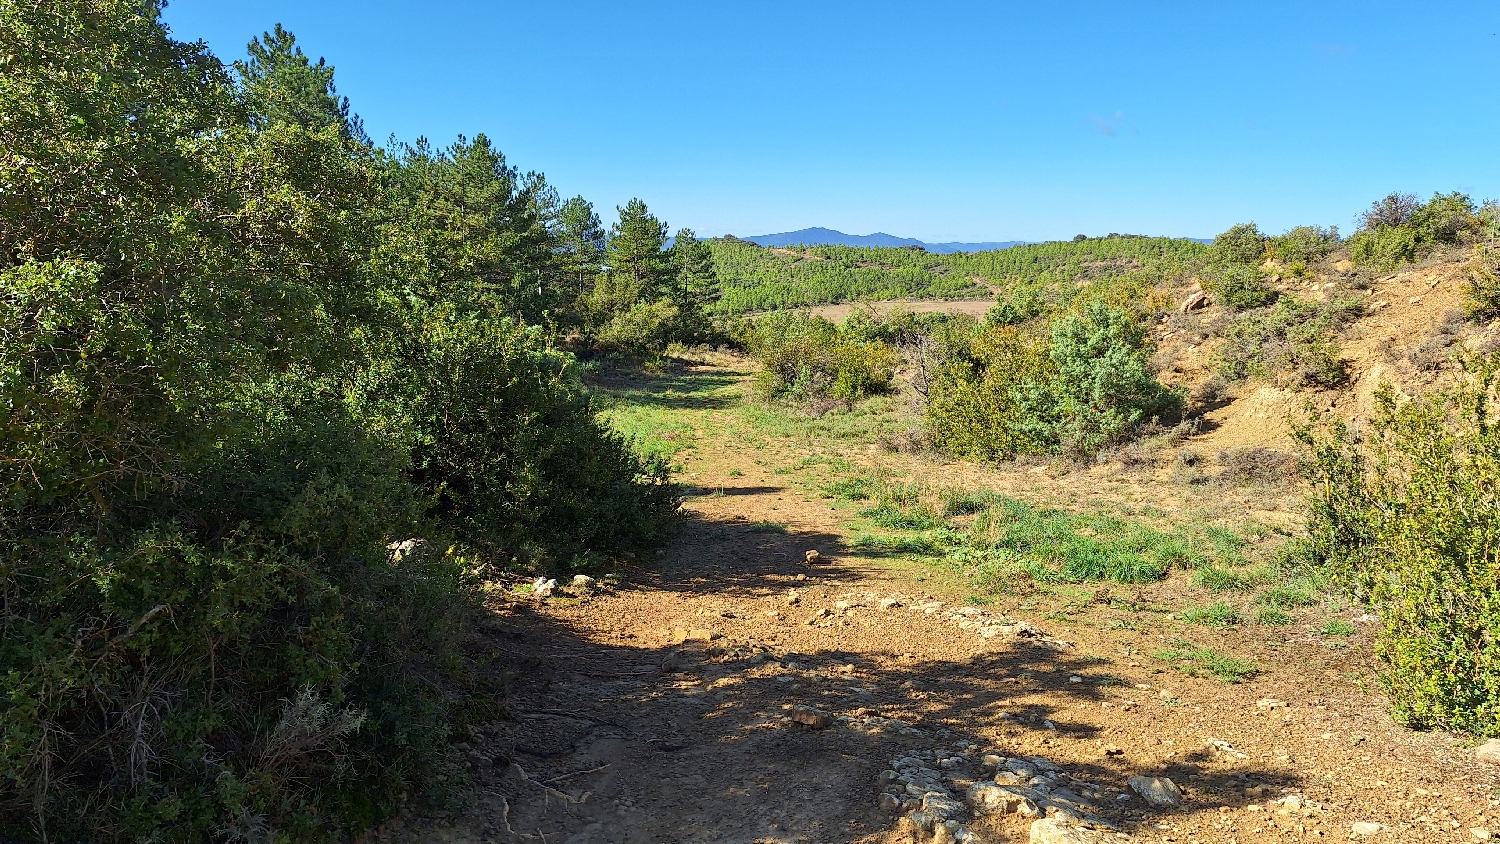 El Camino, Aragon út, sűrű aljnövényzet, jó búvóhely...